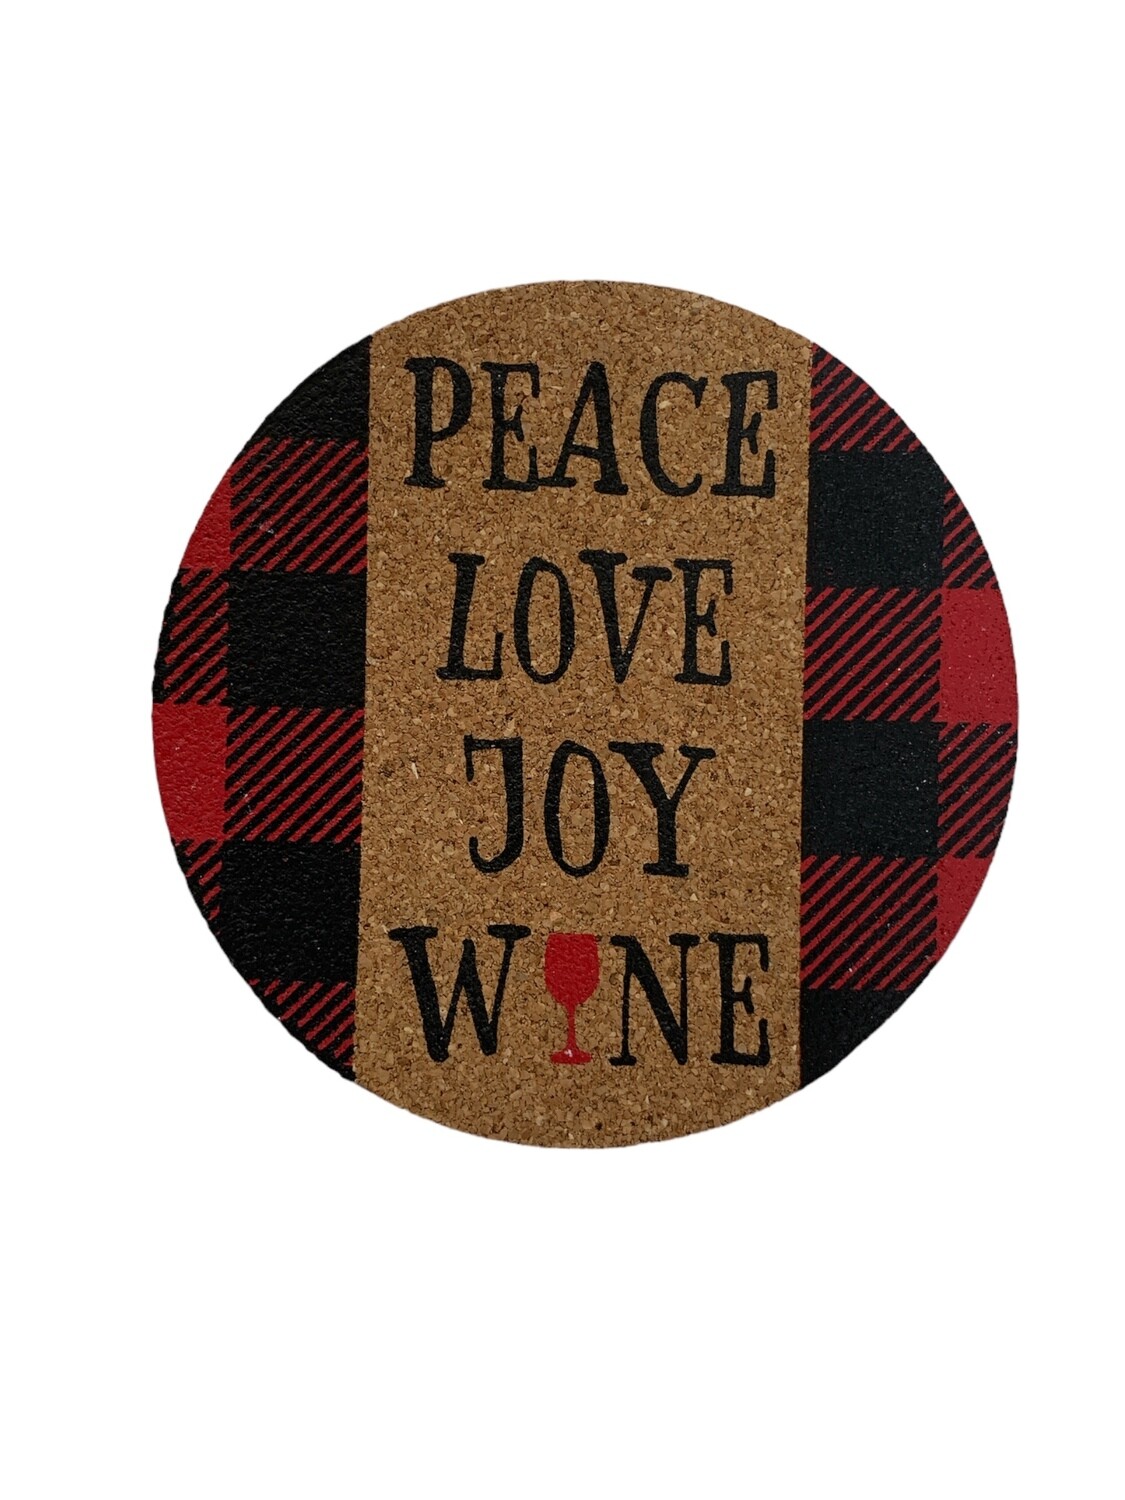 PEACE, LOVE, JOY, WINE Coaster+